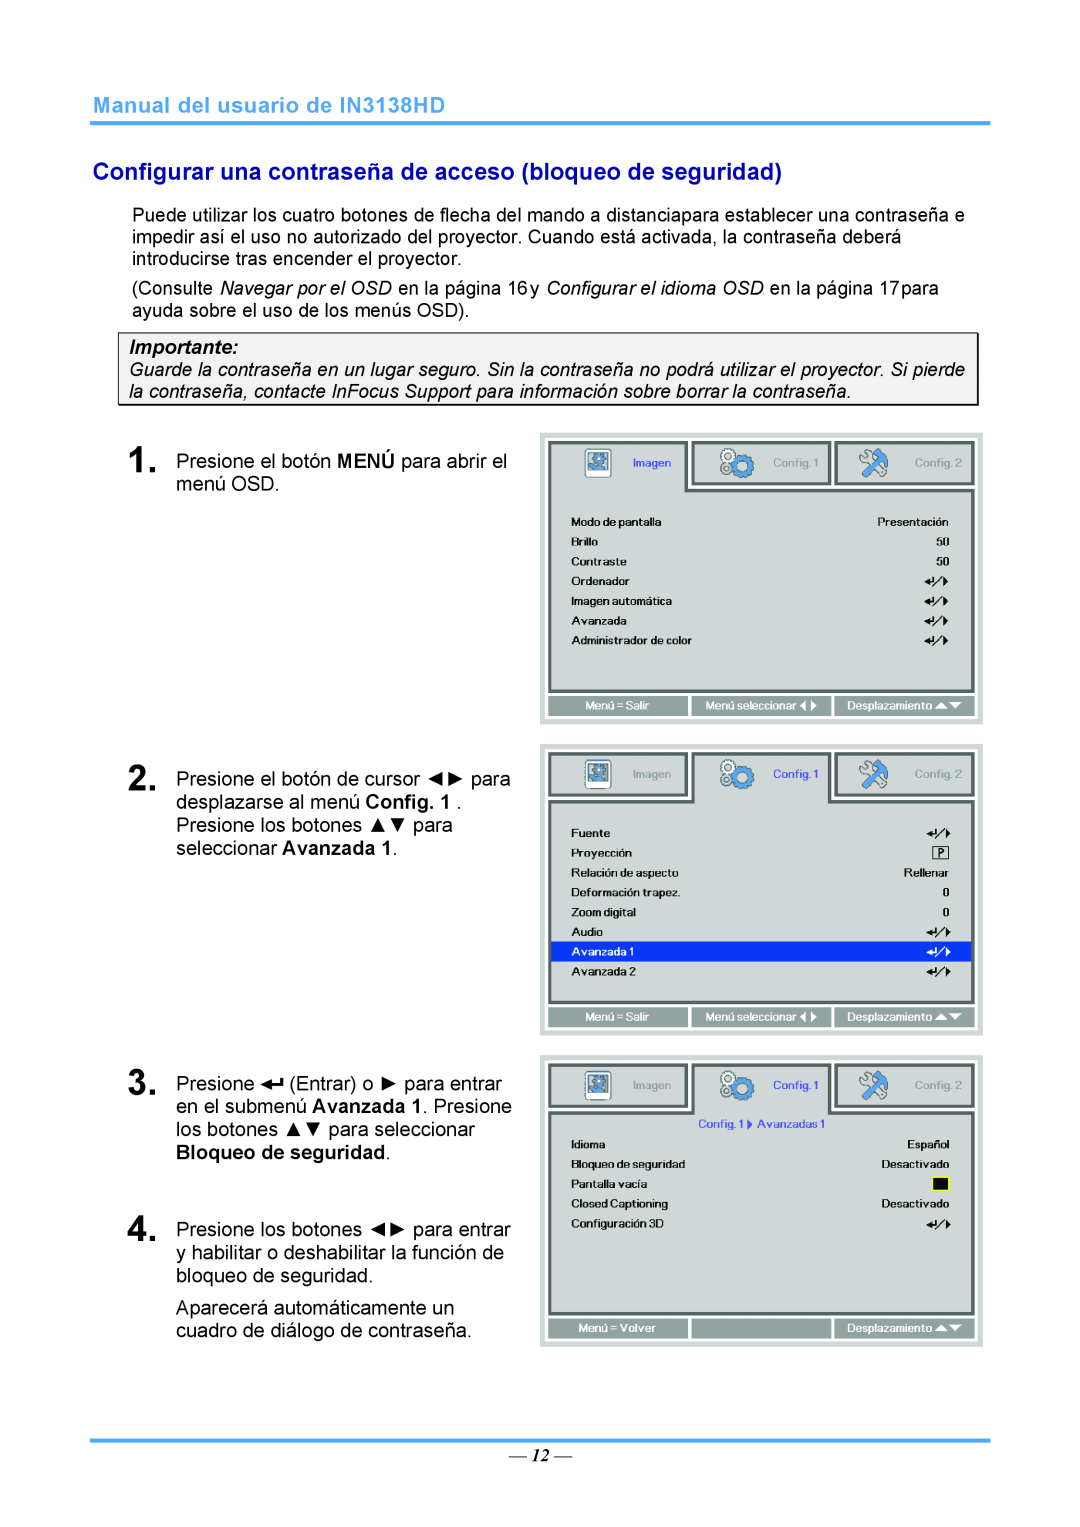 InFocus 3534324301 manual Manual del usuario de IN3138HD, Importante, Presione el botón MENÚ para abrir el menú OSD 